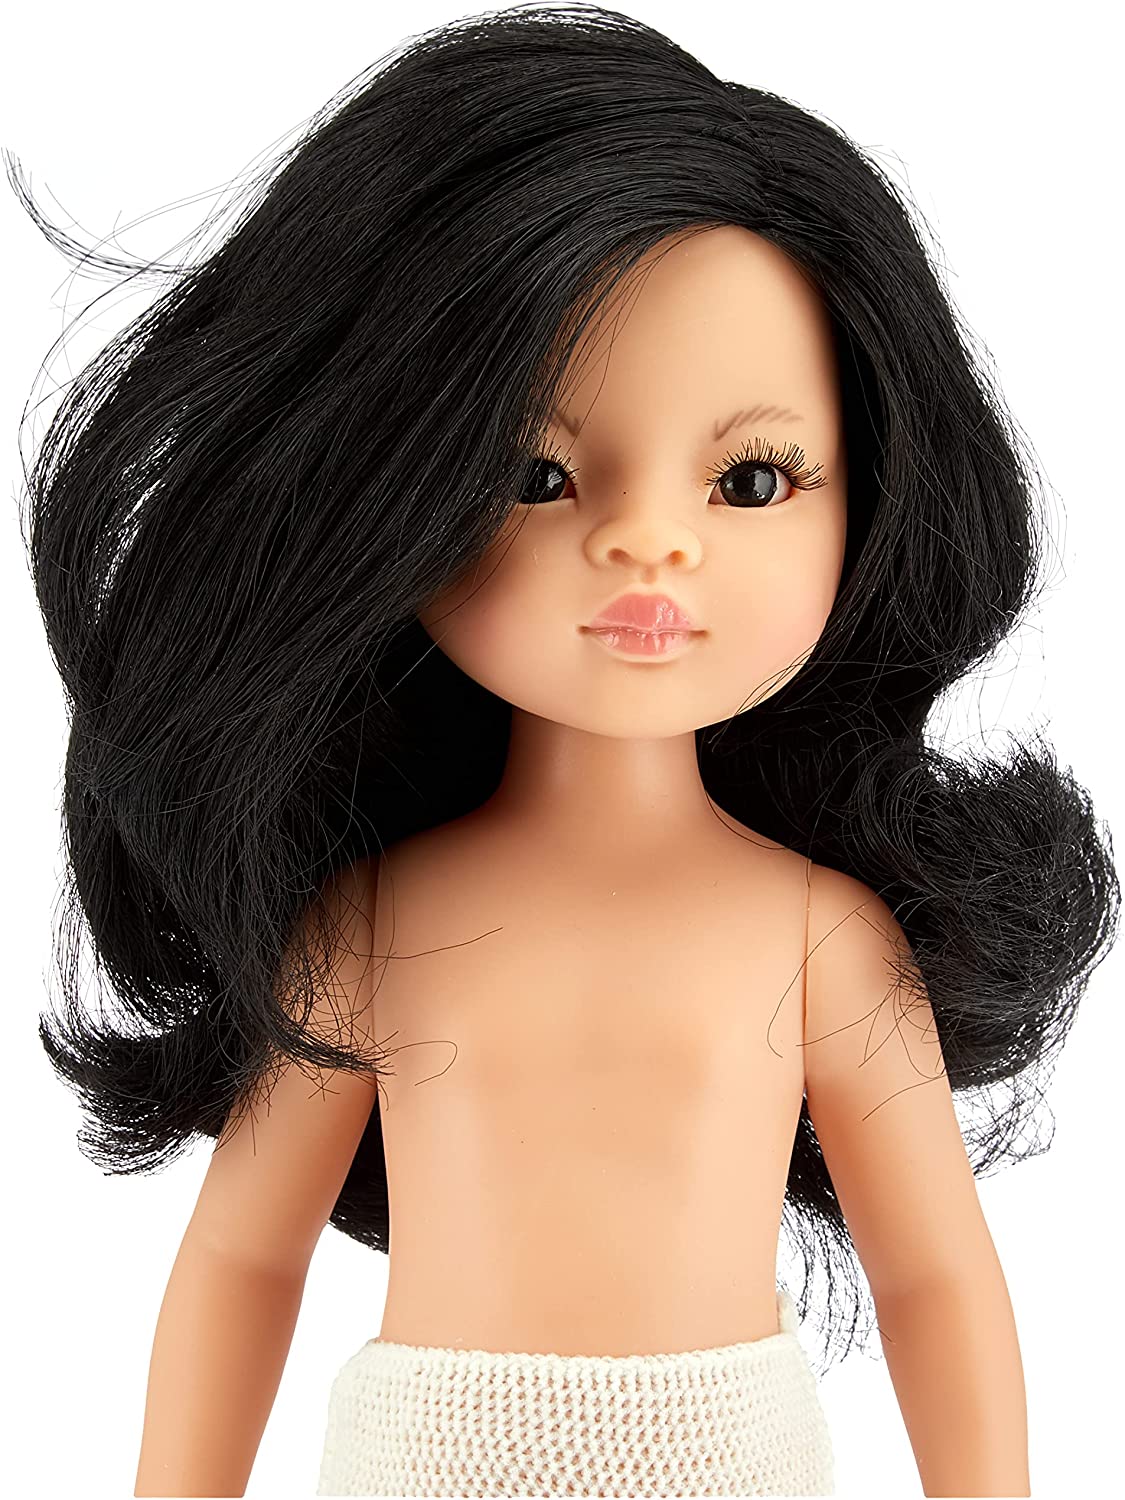 Кукла Лиу, без одежды 32см   